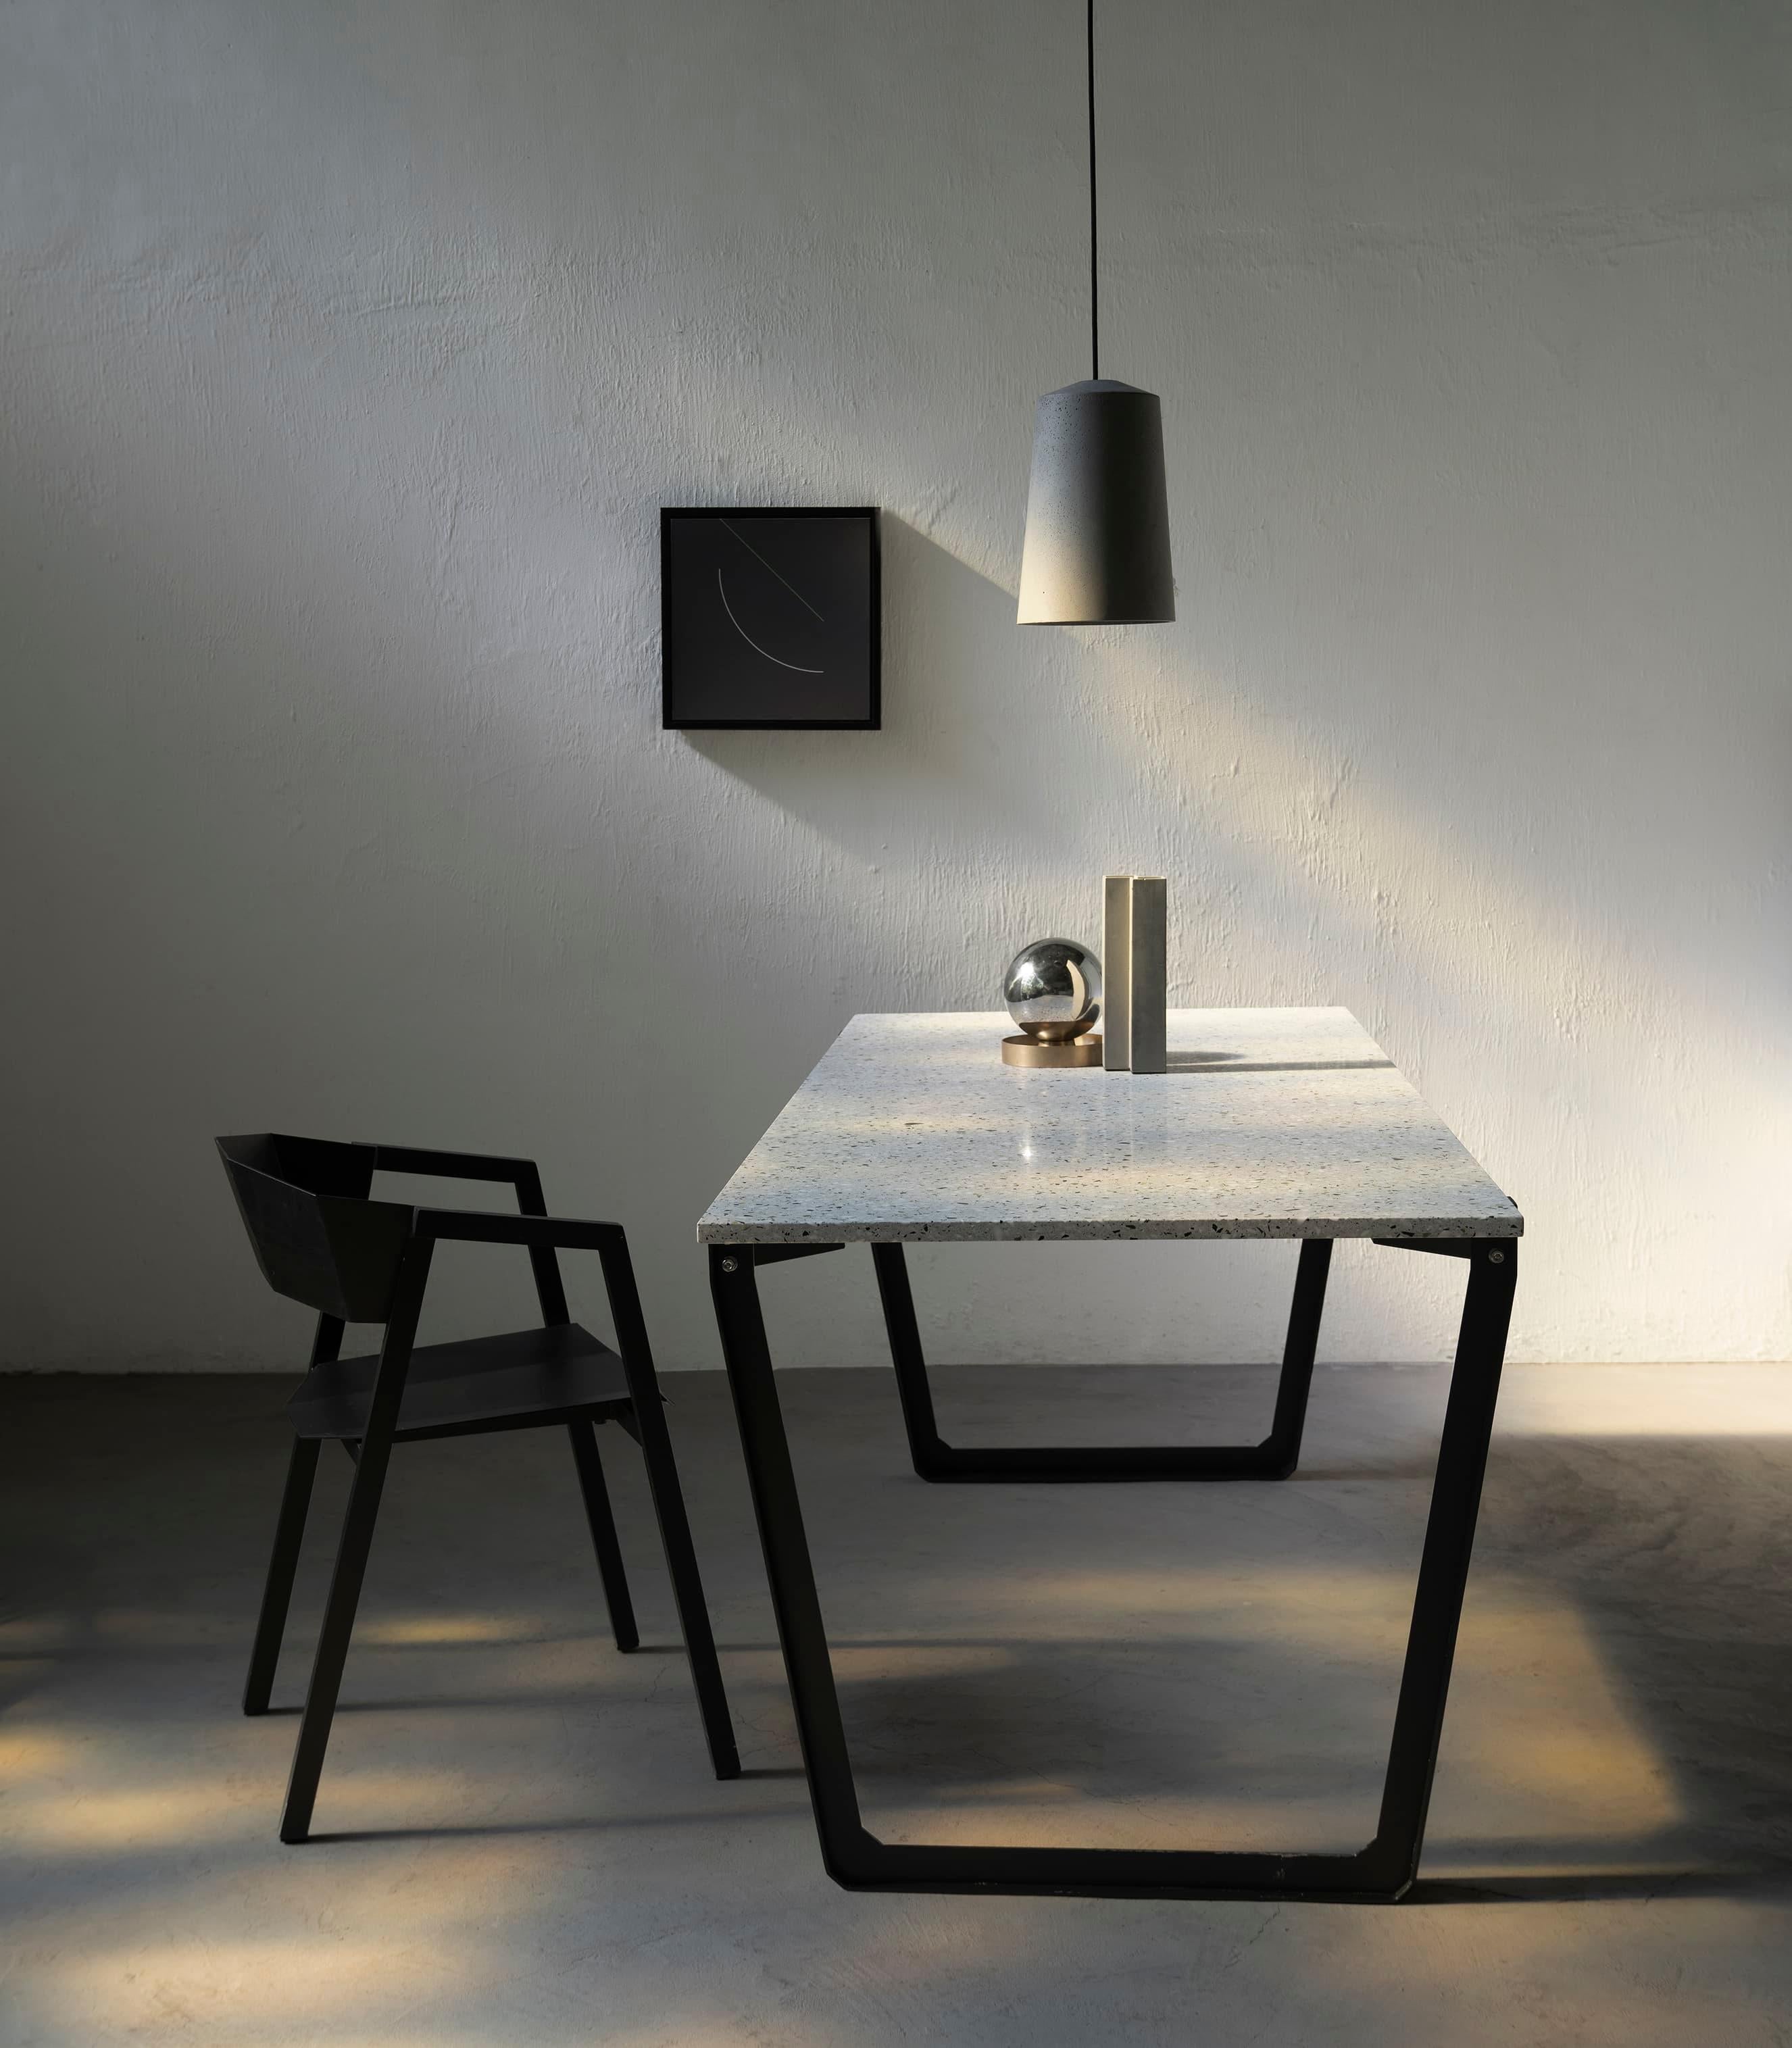 nIAN est une salle à manger (version terrazzo)
par Bentu design

Plateau de table : Terrazzo blanc
Base de la table : Acier revêtu par poudre


Les meubles de Bentu Design tirent leur singularité de la simplicité de leurs formes et de leurs